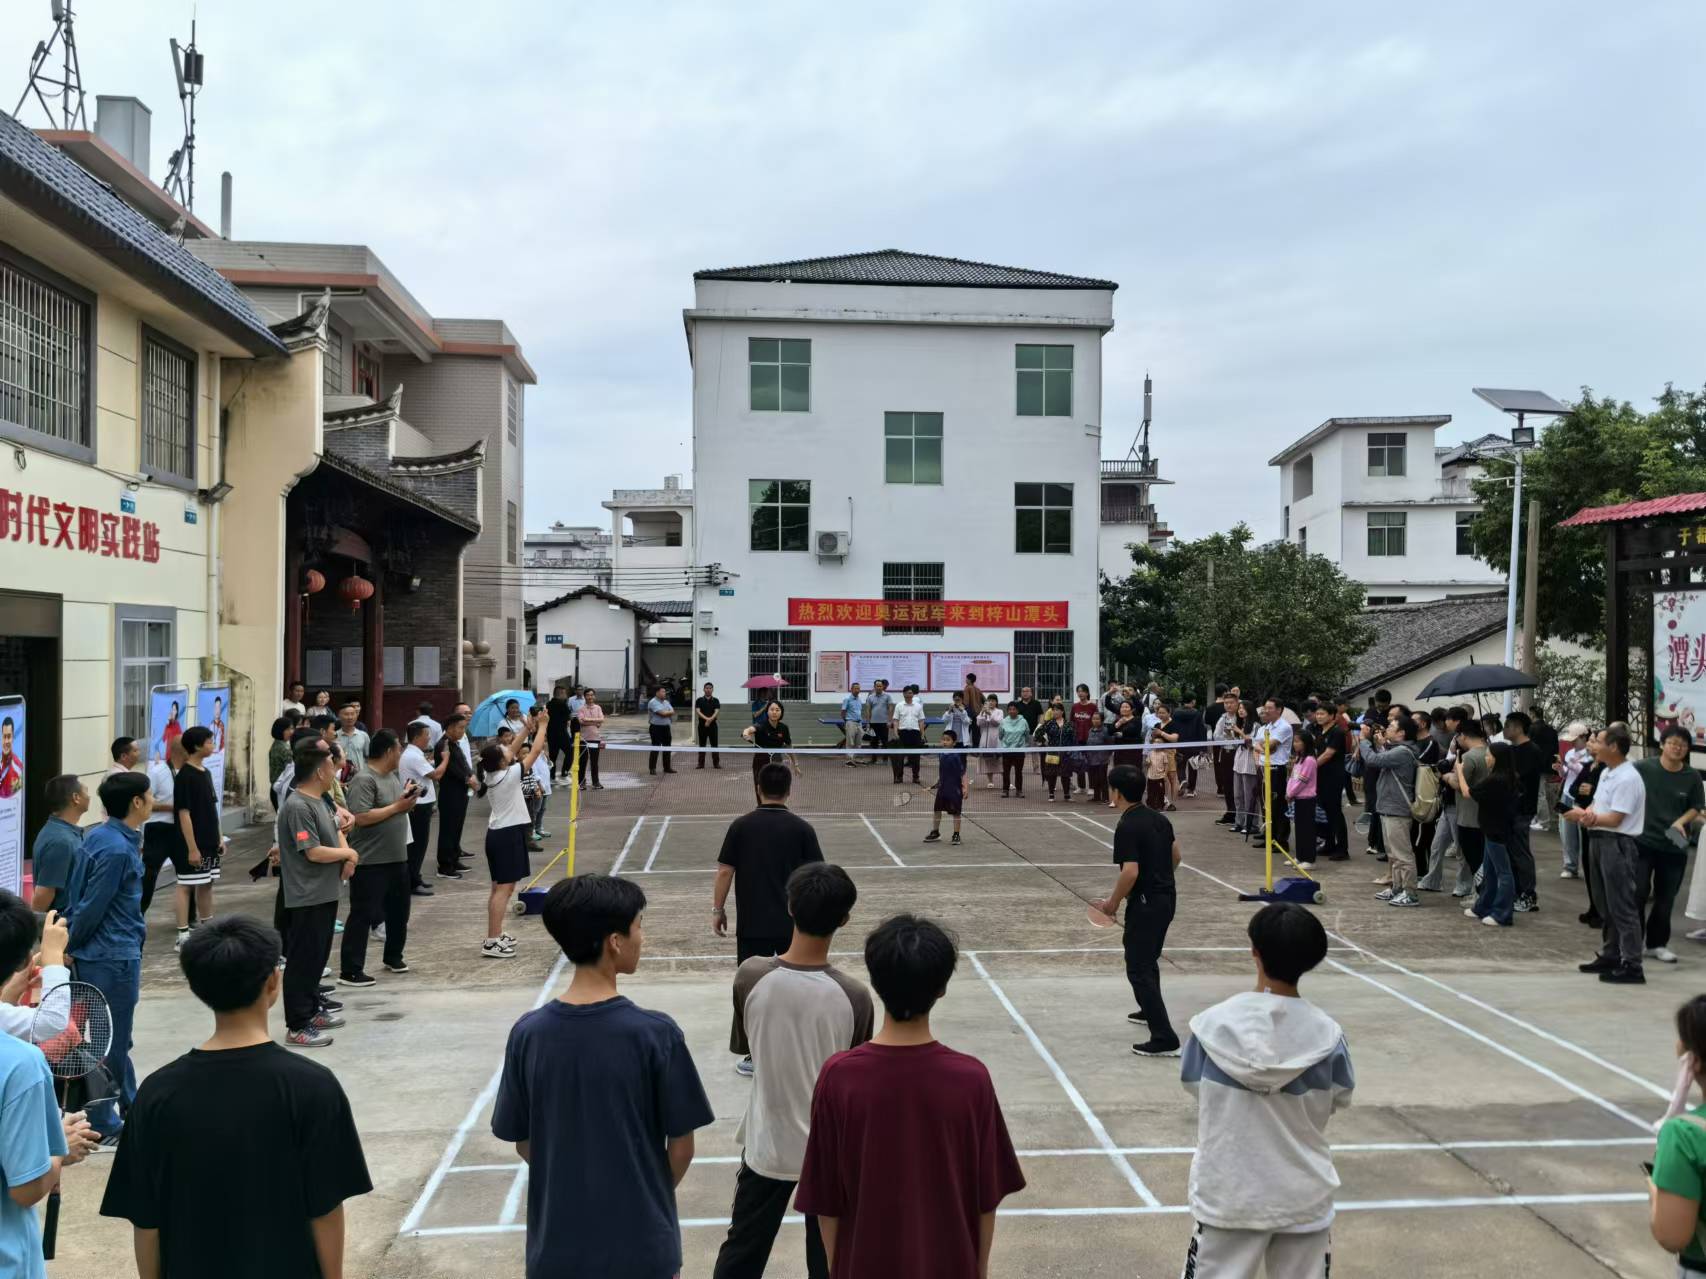 赵芸蕾与潭头社区居民进行羽毛球比赛。人民网记者 杨磊摄